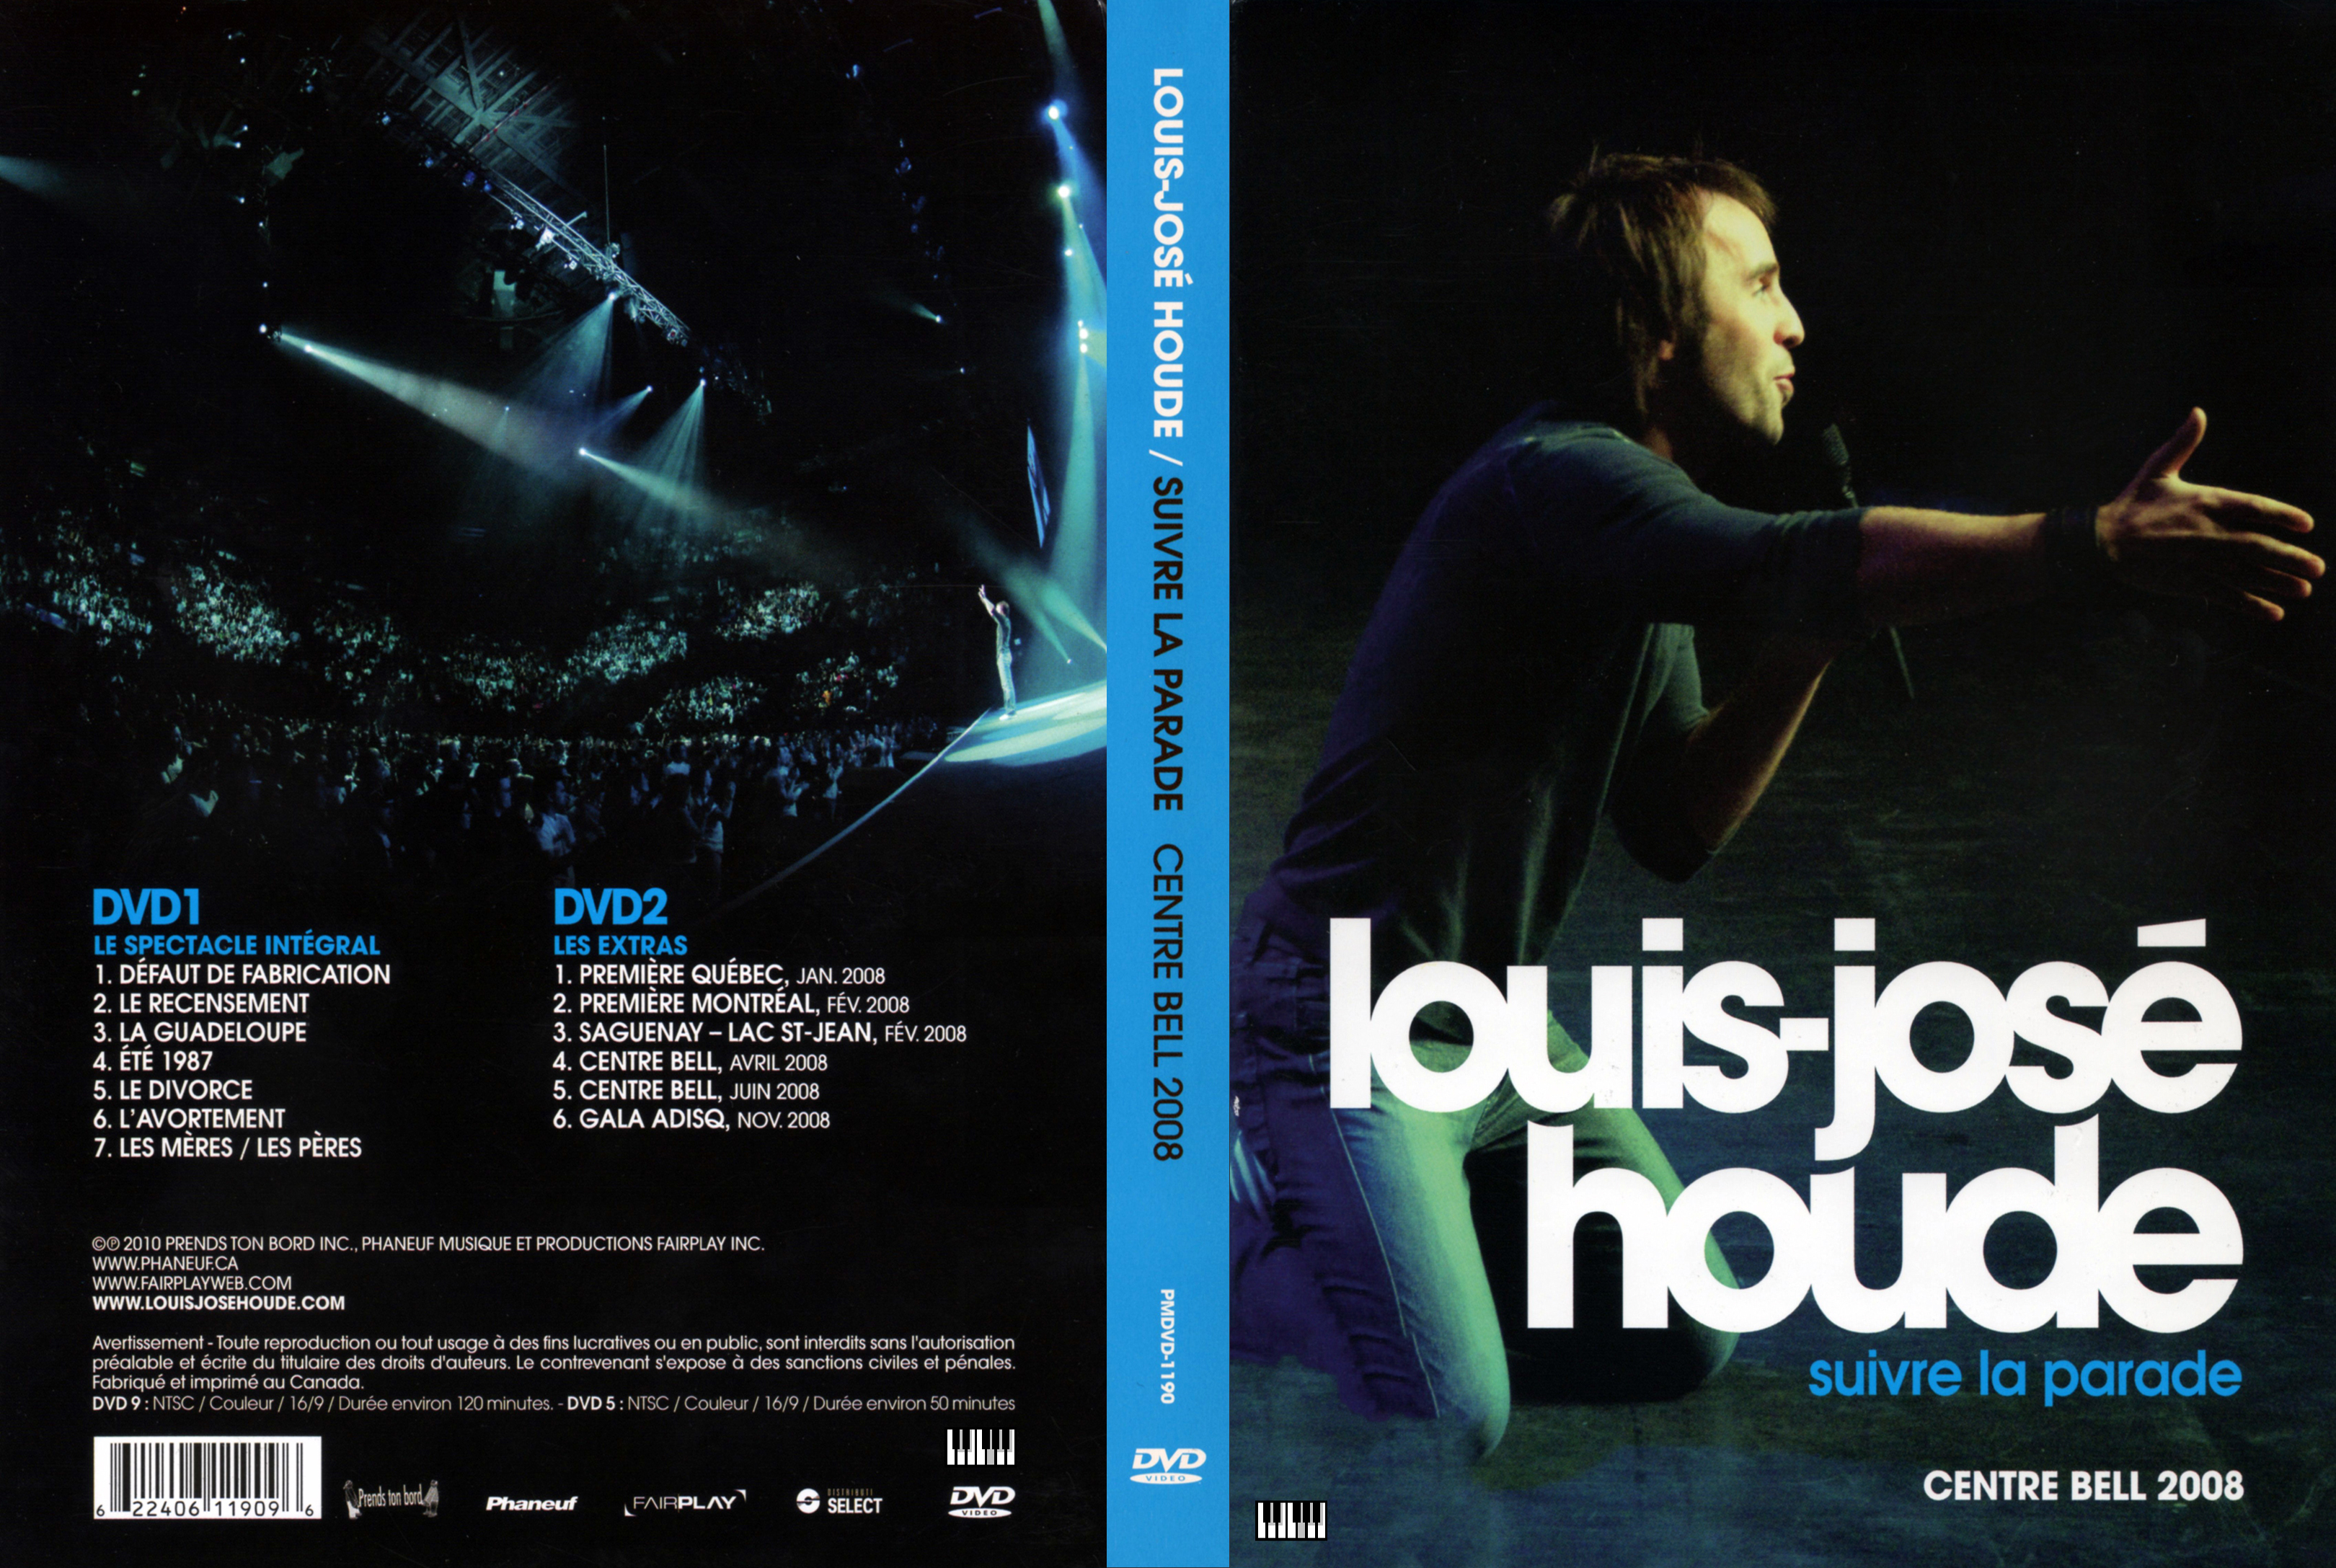 Jaquette DVD Louis-Jose Houde - Suivre la parade